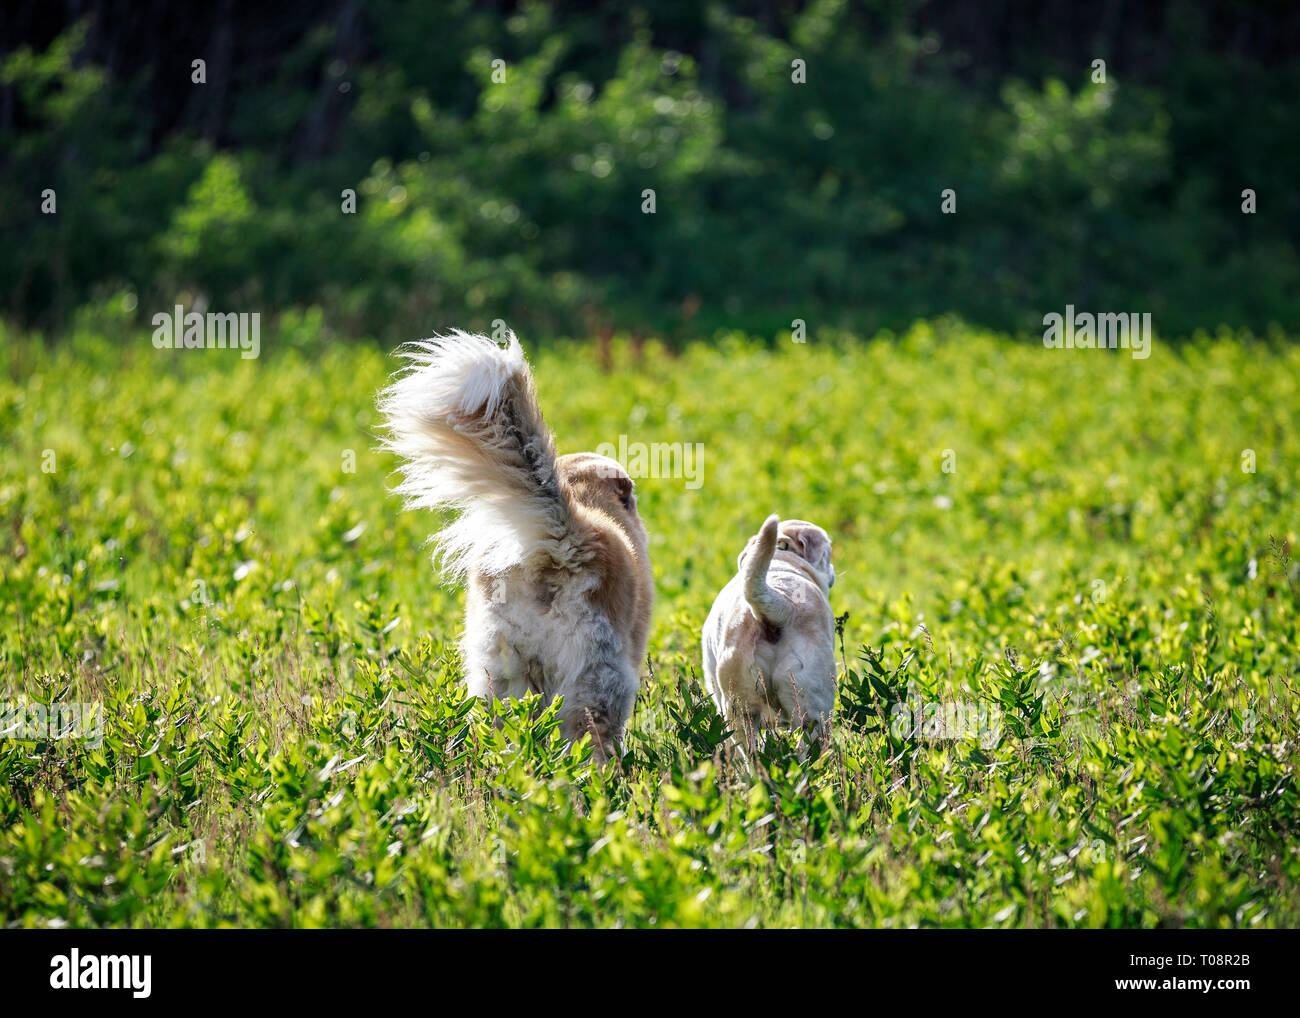 Vista trasera de dos perros explorando en un campo abierto, Manitoba, Canadá. Foto de stock